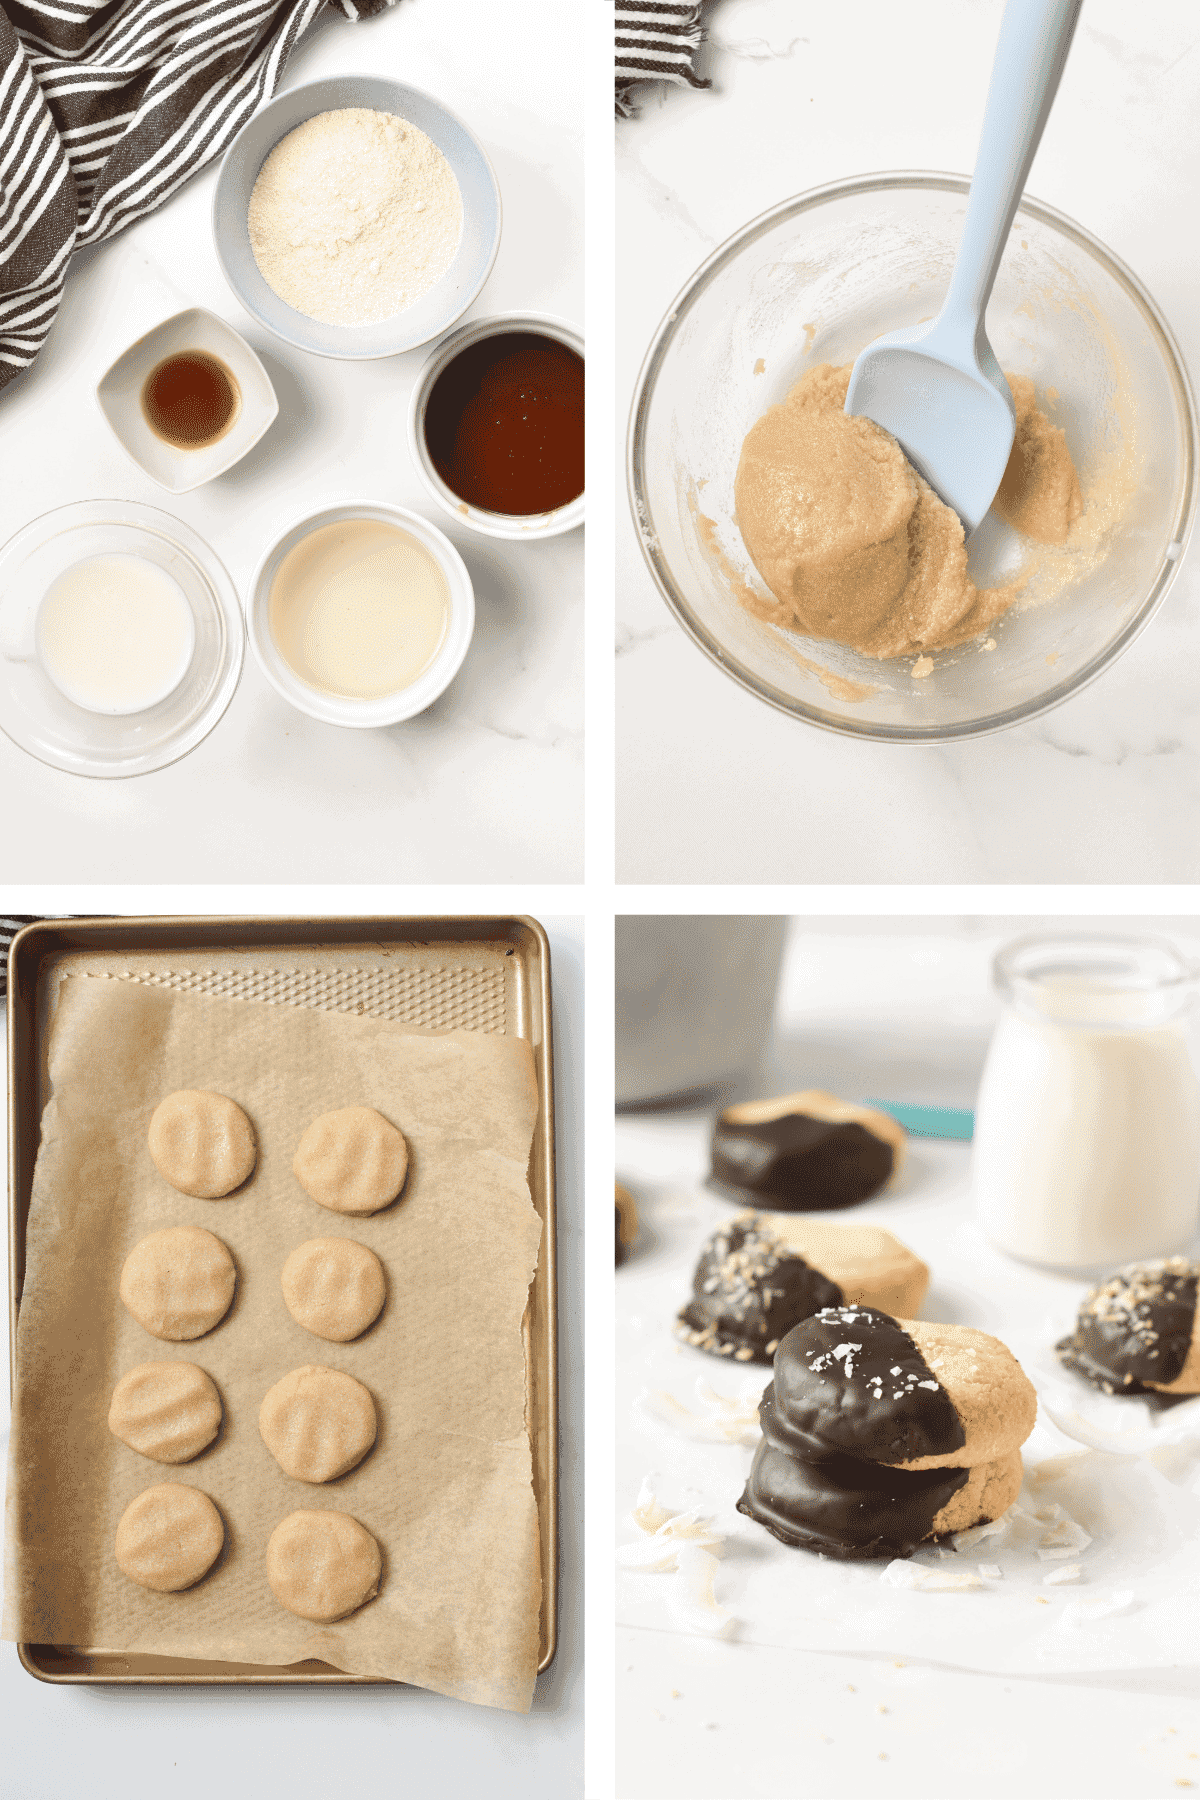 Making Coconut Flour Shortbread